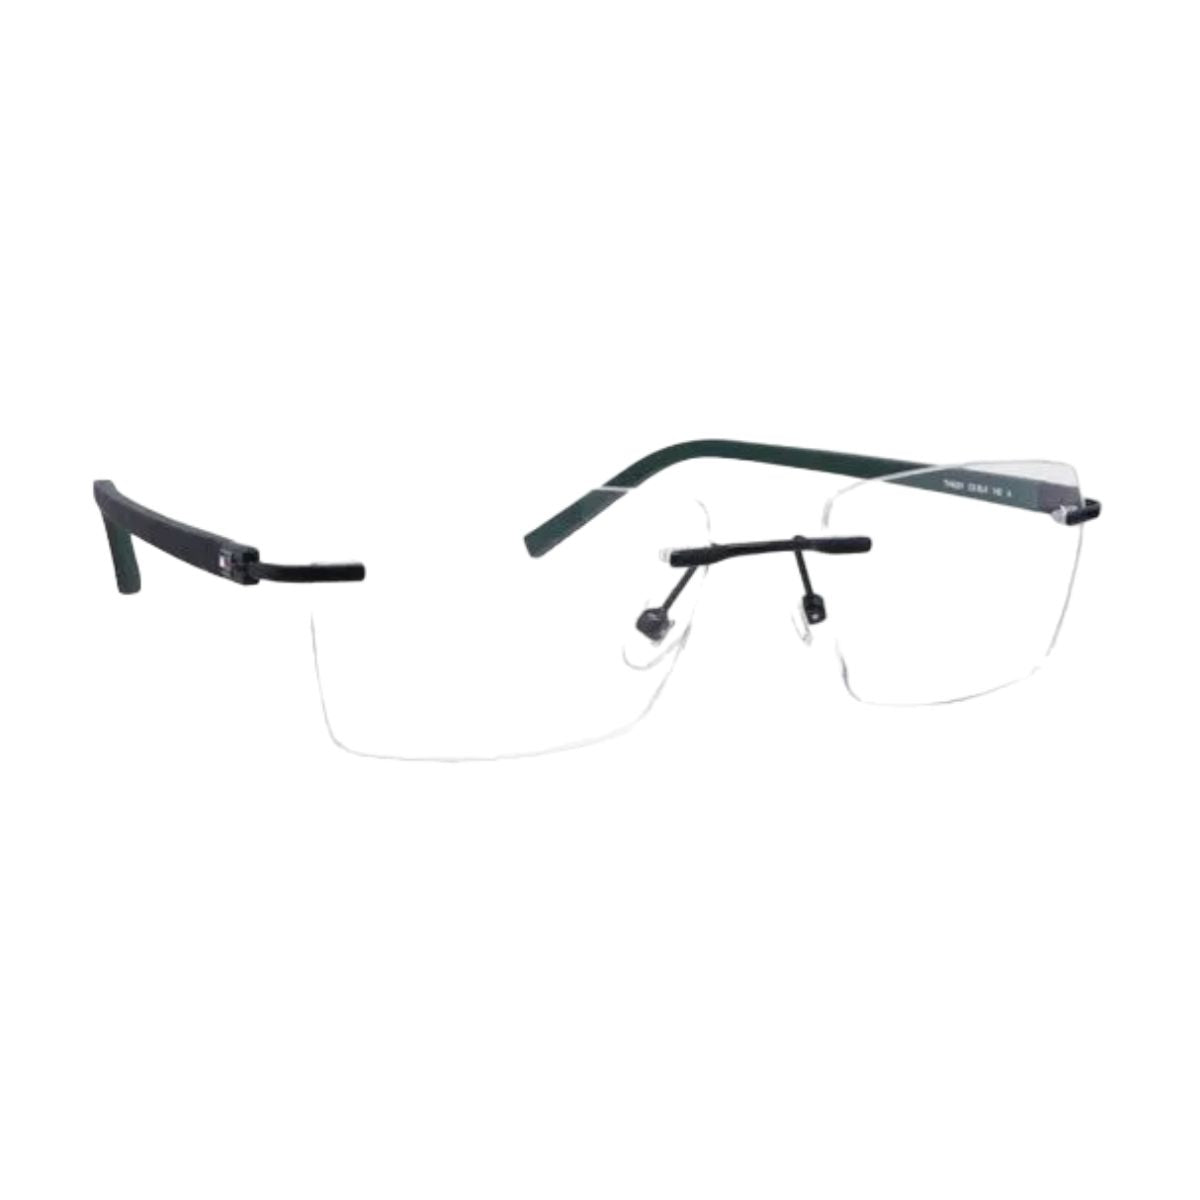 "shop Tommy Hilfiger 6201 C5 optical eyeglasses frame for men and women at optorium"